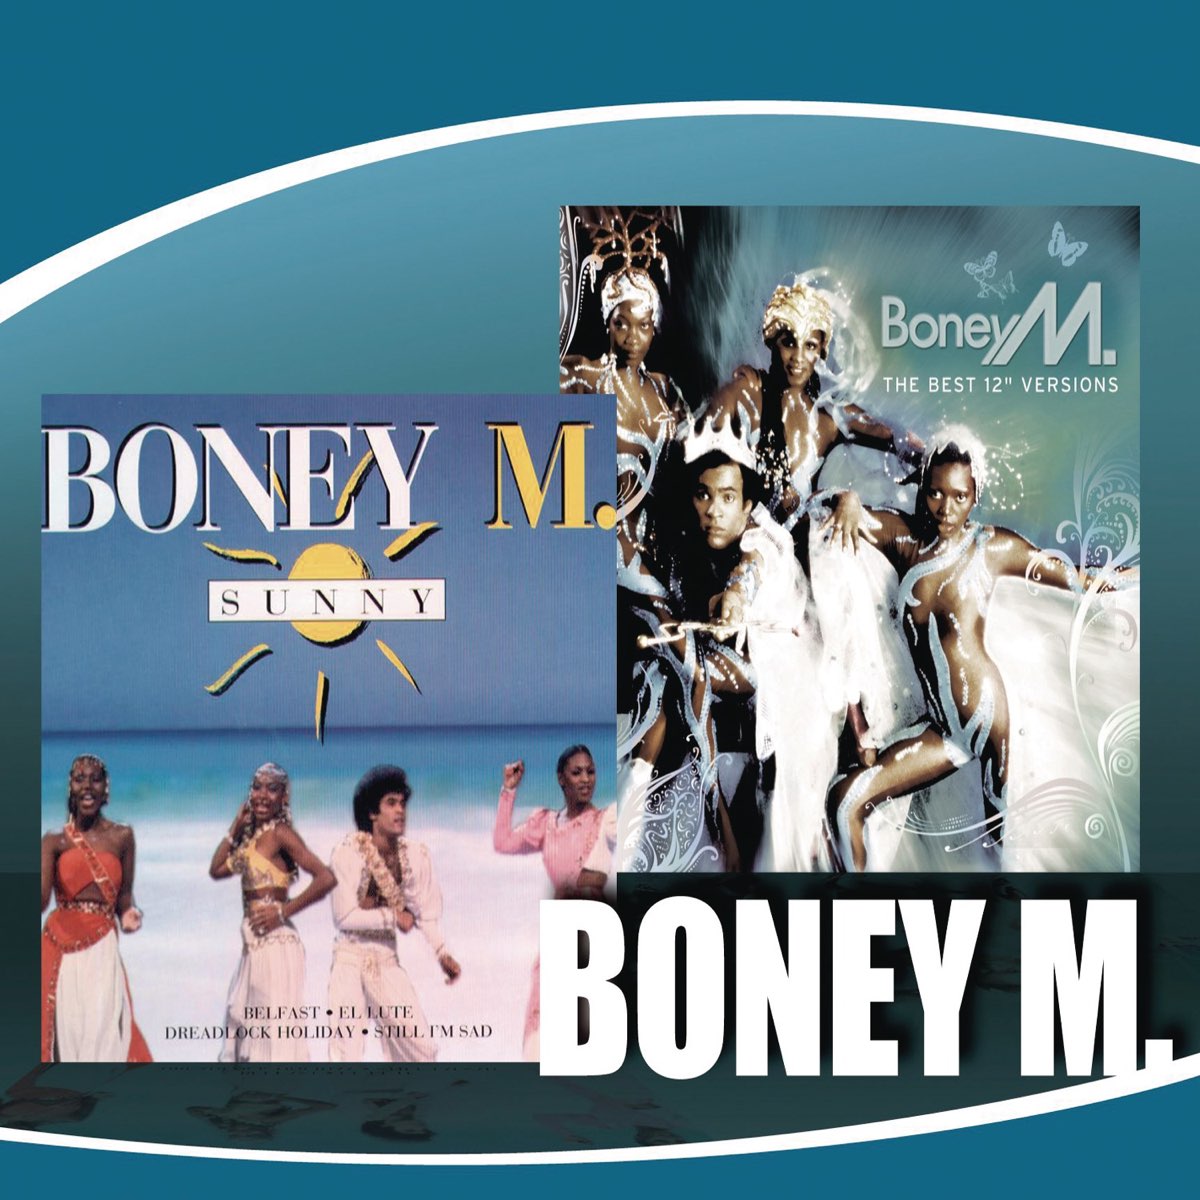 Boney m dance. Boney m Sunny обложка. Boney m обложки альбомов. Boney m 2014. Первый состав Boney m.